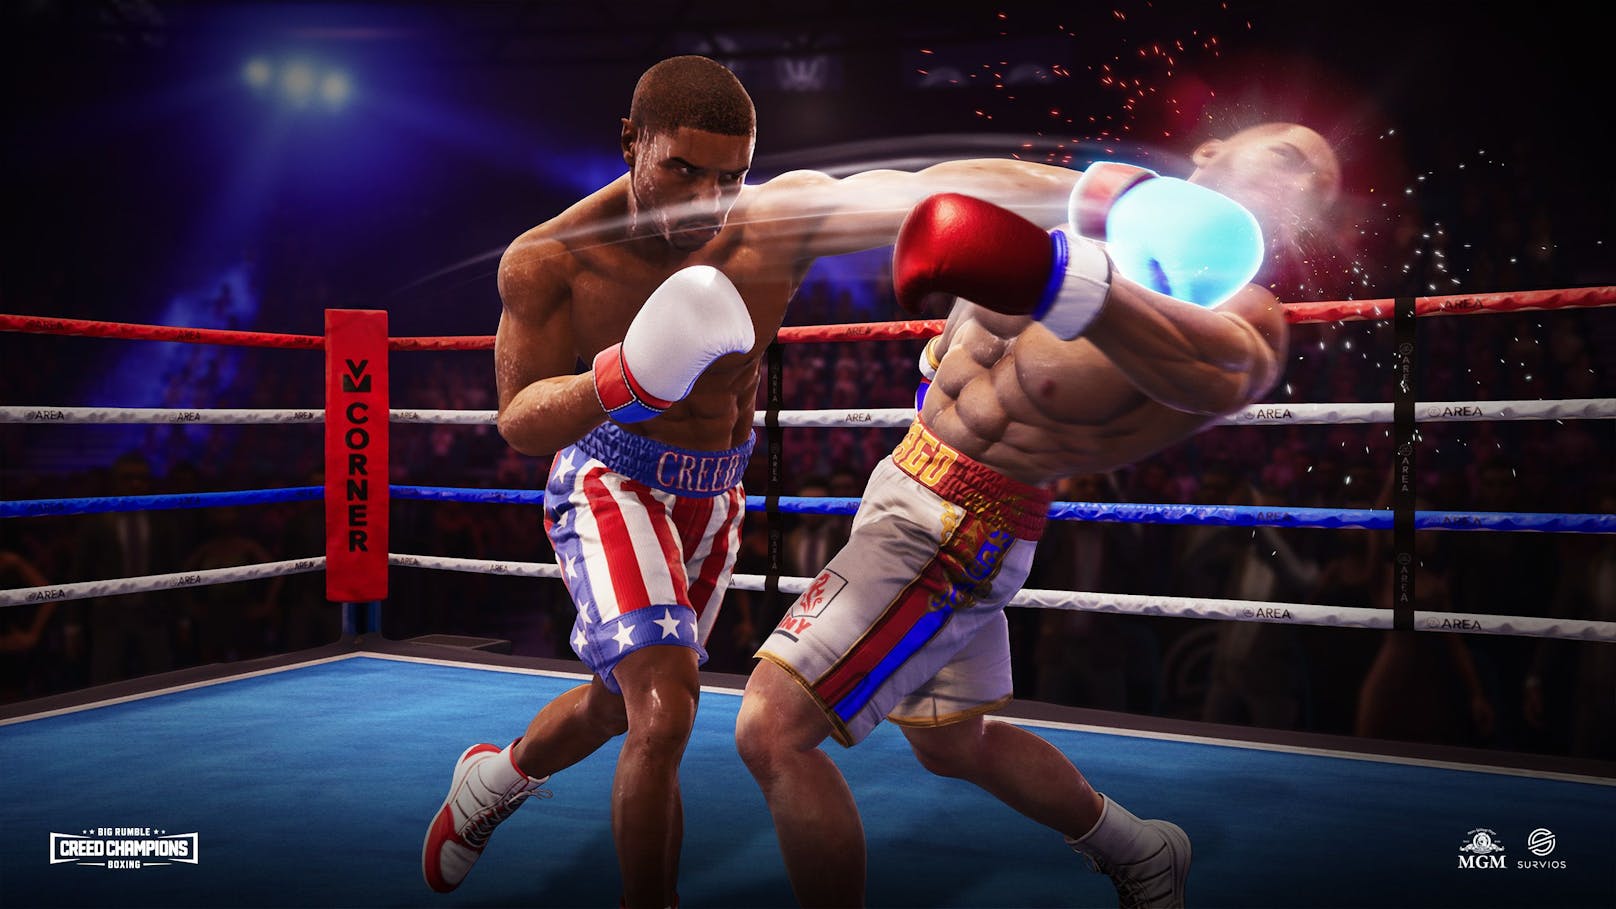 "Big Rumble Boxing: Creed Champions" erleidet im Test zwar kein K.o., kann aber auch nicht wirklich überzeugen. Was bleibt, ist ein grafisch toll anzusehendes Arcade-Sportspiel, ...